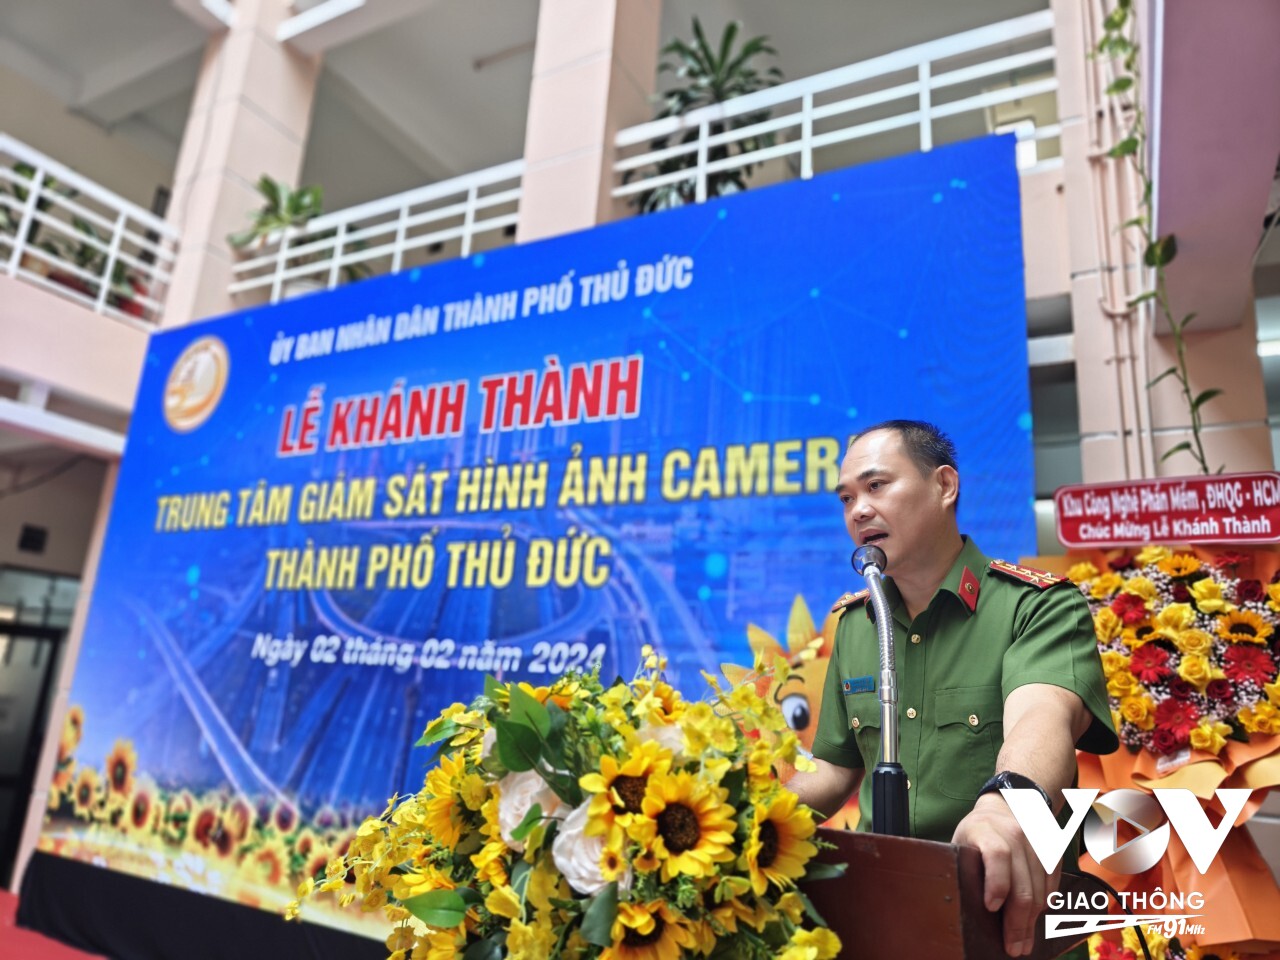 Đại tá Trần Văn Hiếu – Trưởng Công an Tp.Thủ Đức cho biết Trung tâm giám sát hình ảnh camera sẽ giúp cho công tác quản lý an ninh trật tự, an toàn xã hội được nâng cấp hơn trong thời gian tới